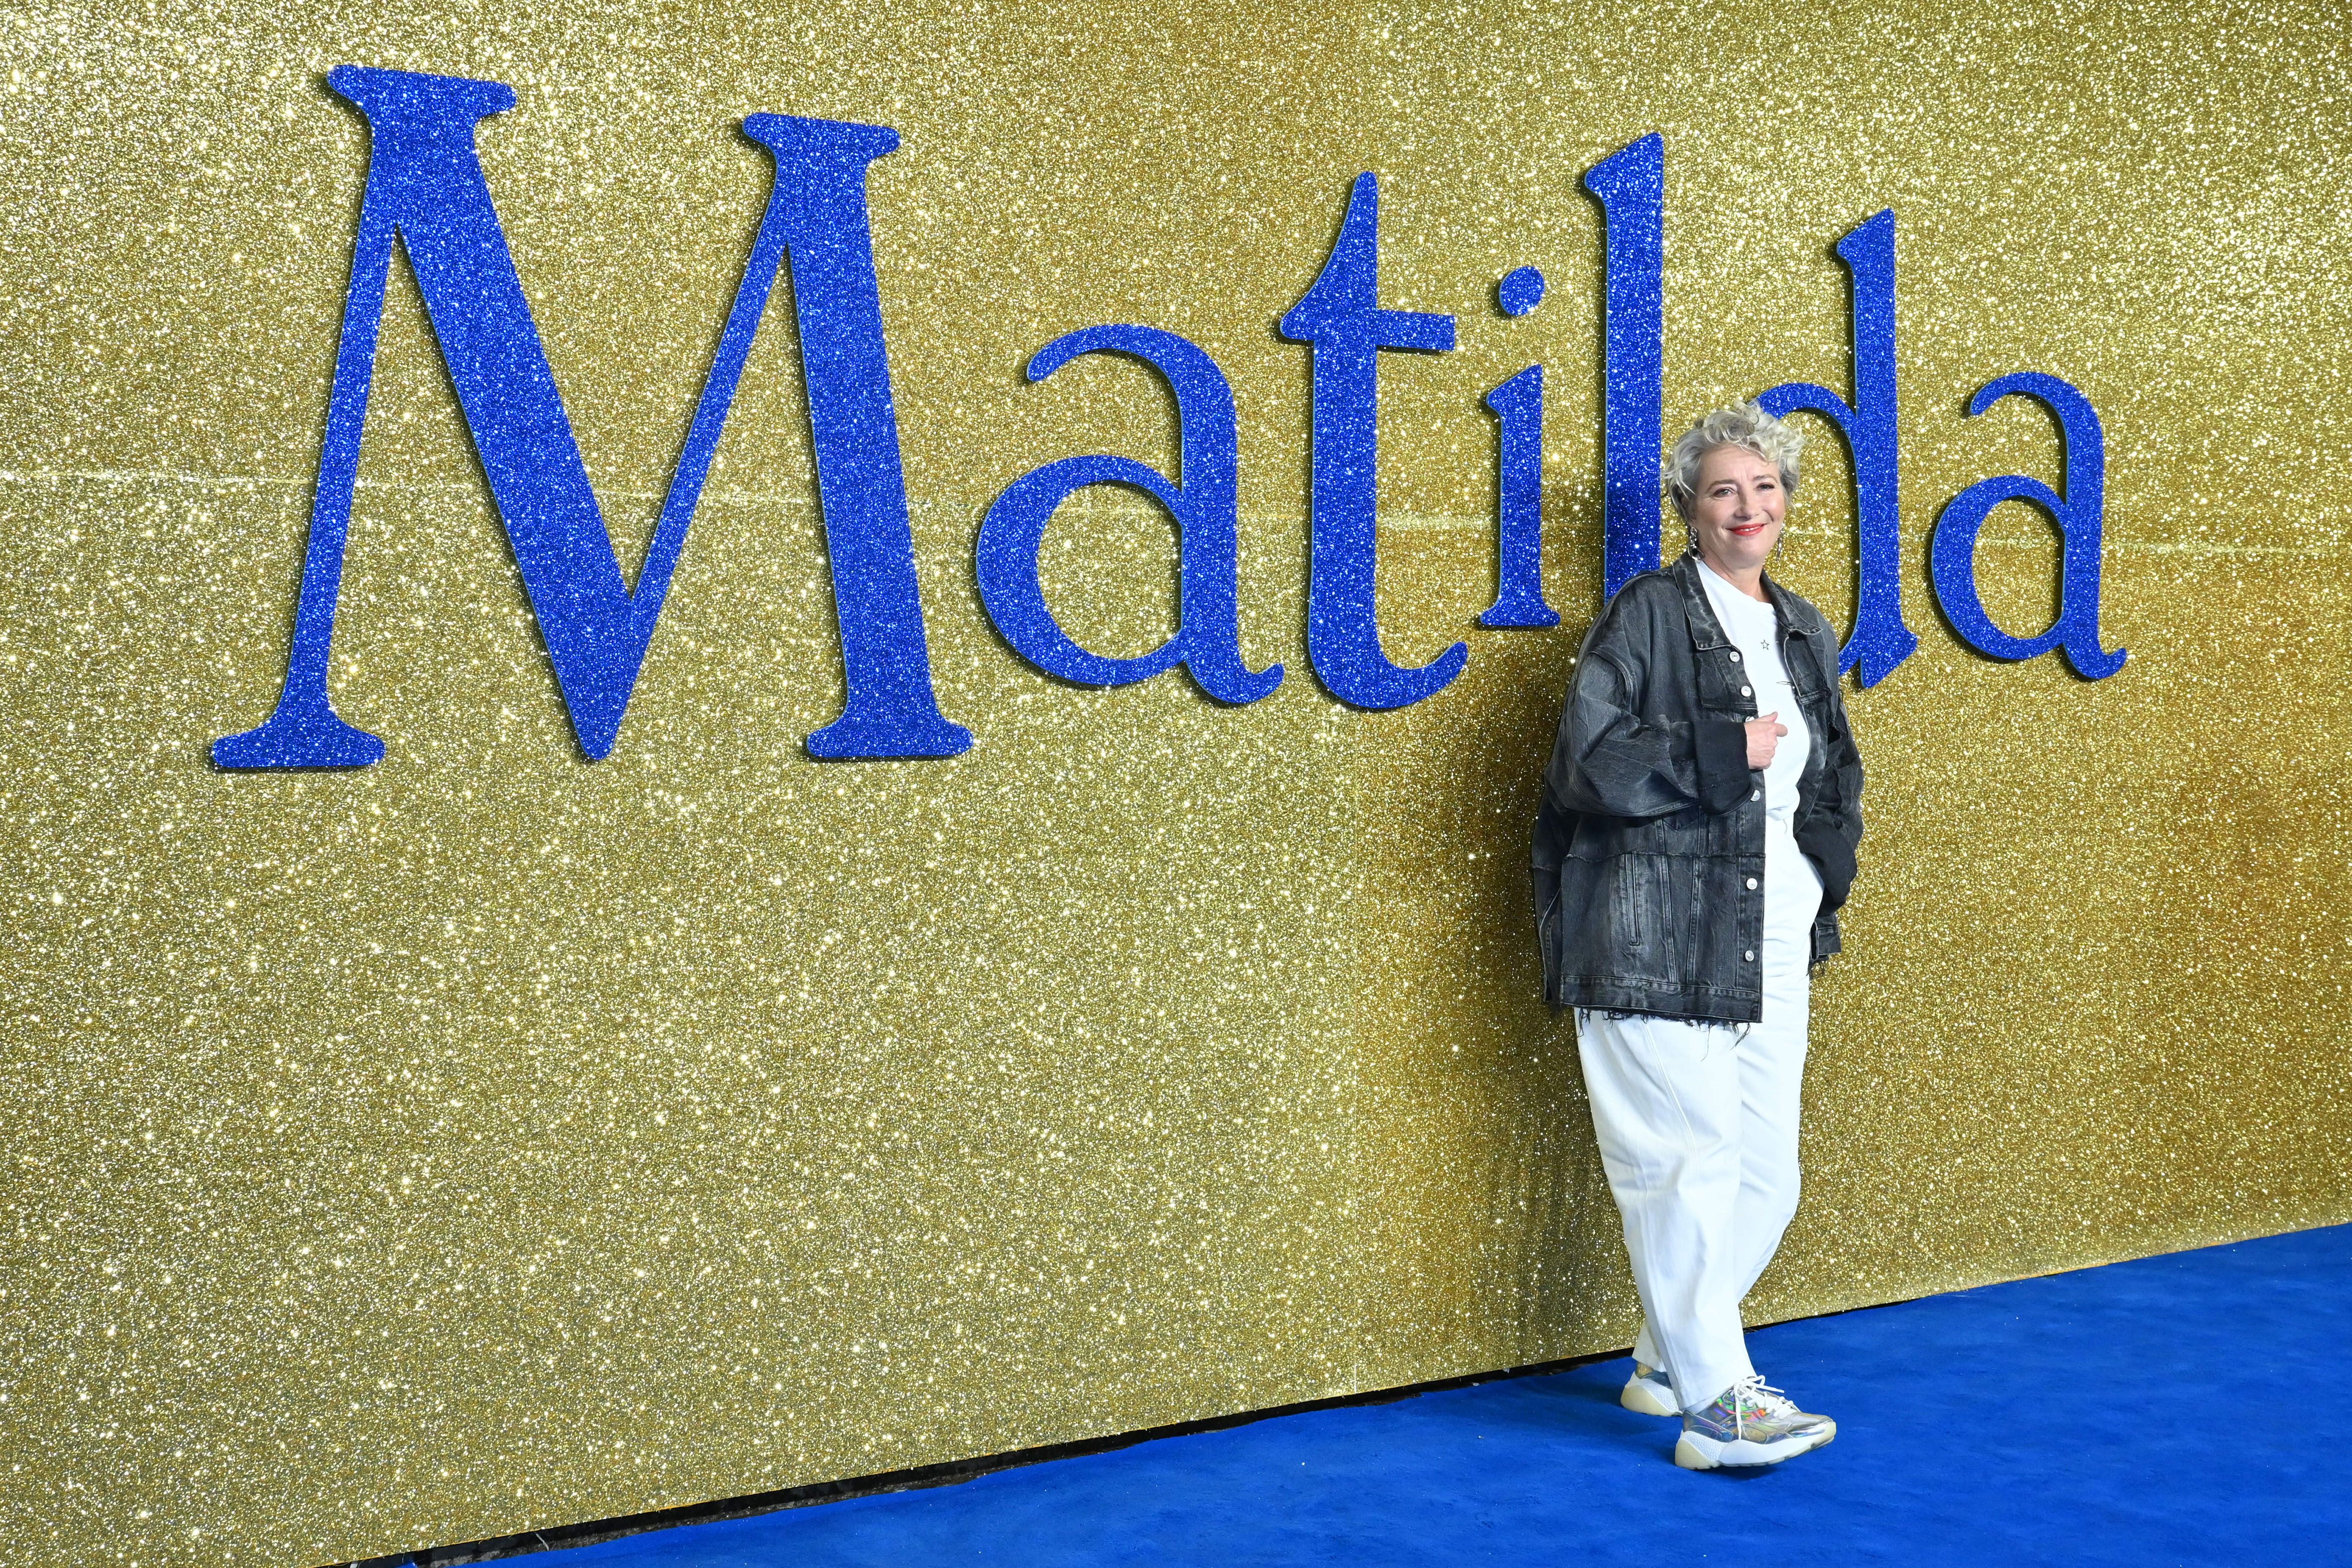 Detalhes sobre o elenco imperdível de Matilda, de Roald Dahl, o musical na Netflix (incluindo quem está interpretando Matilda)